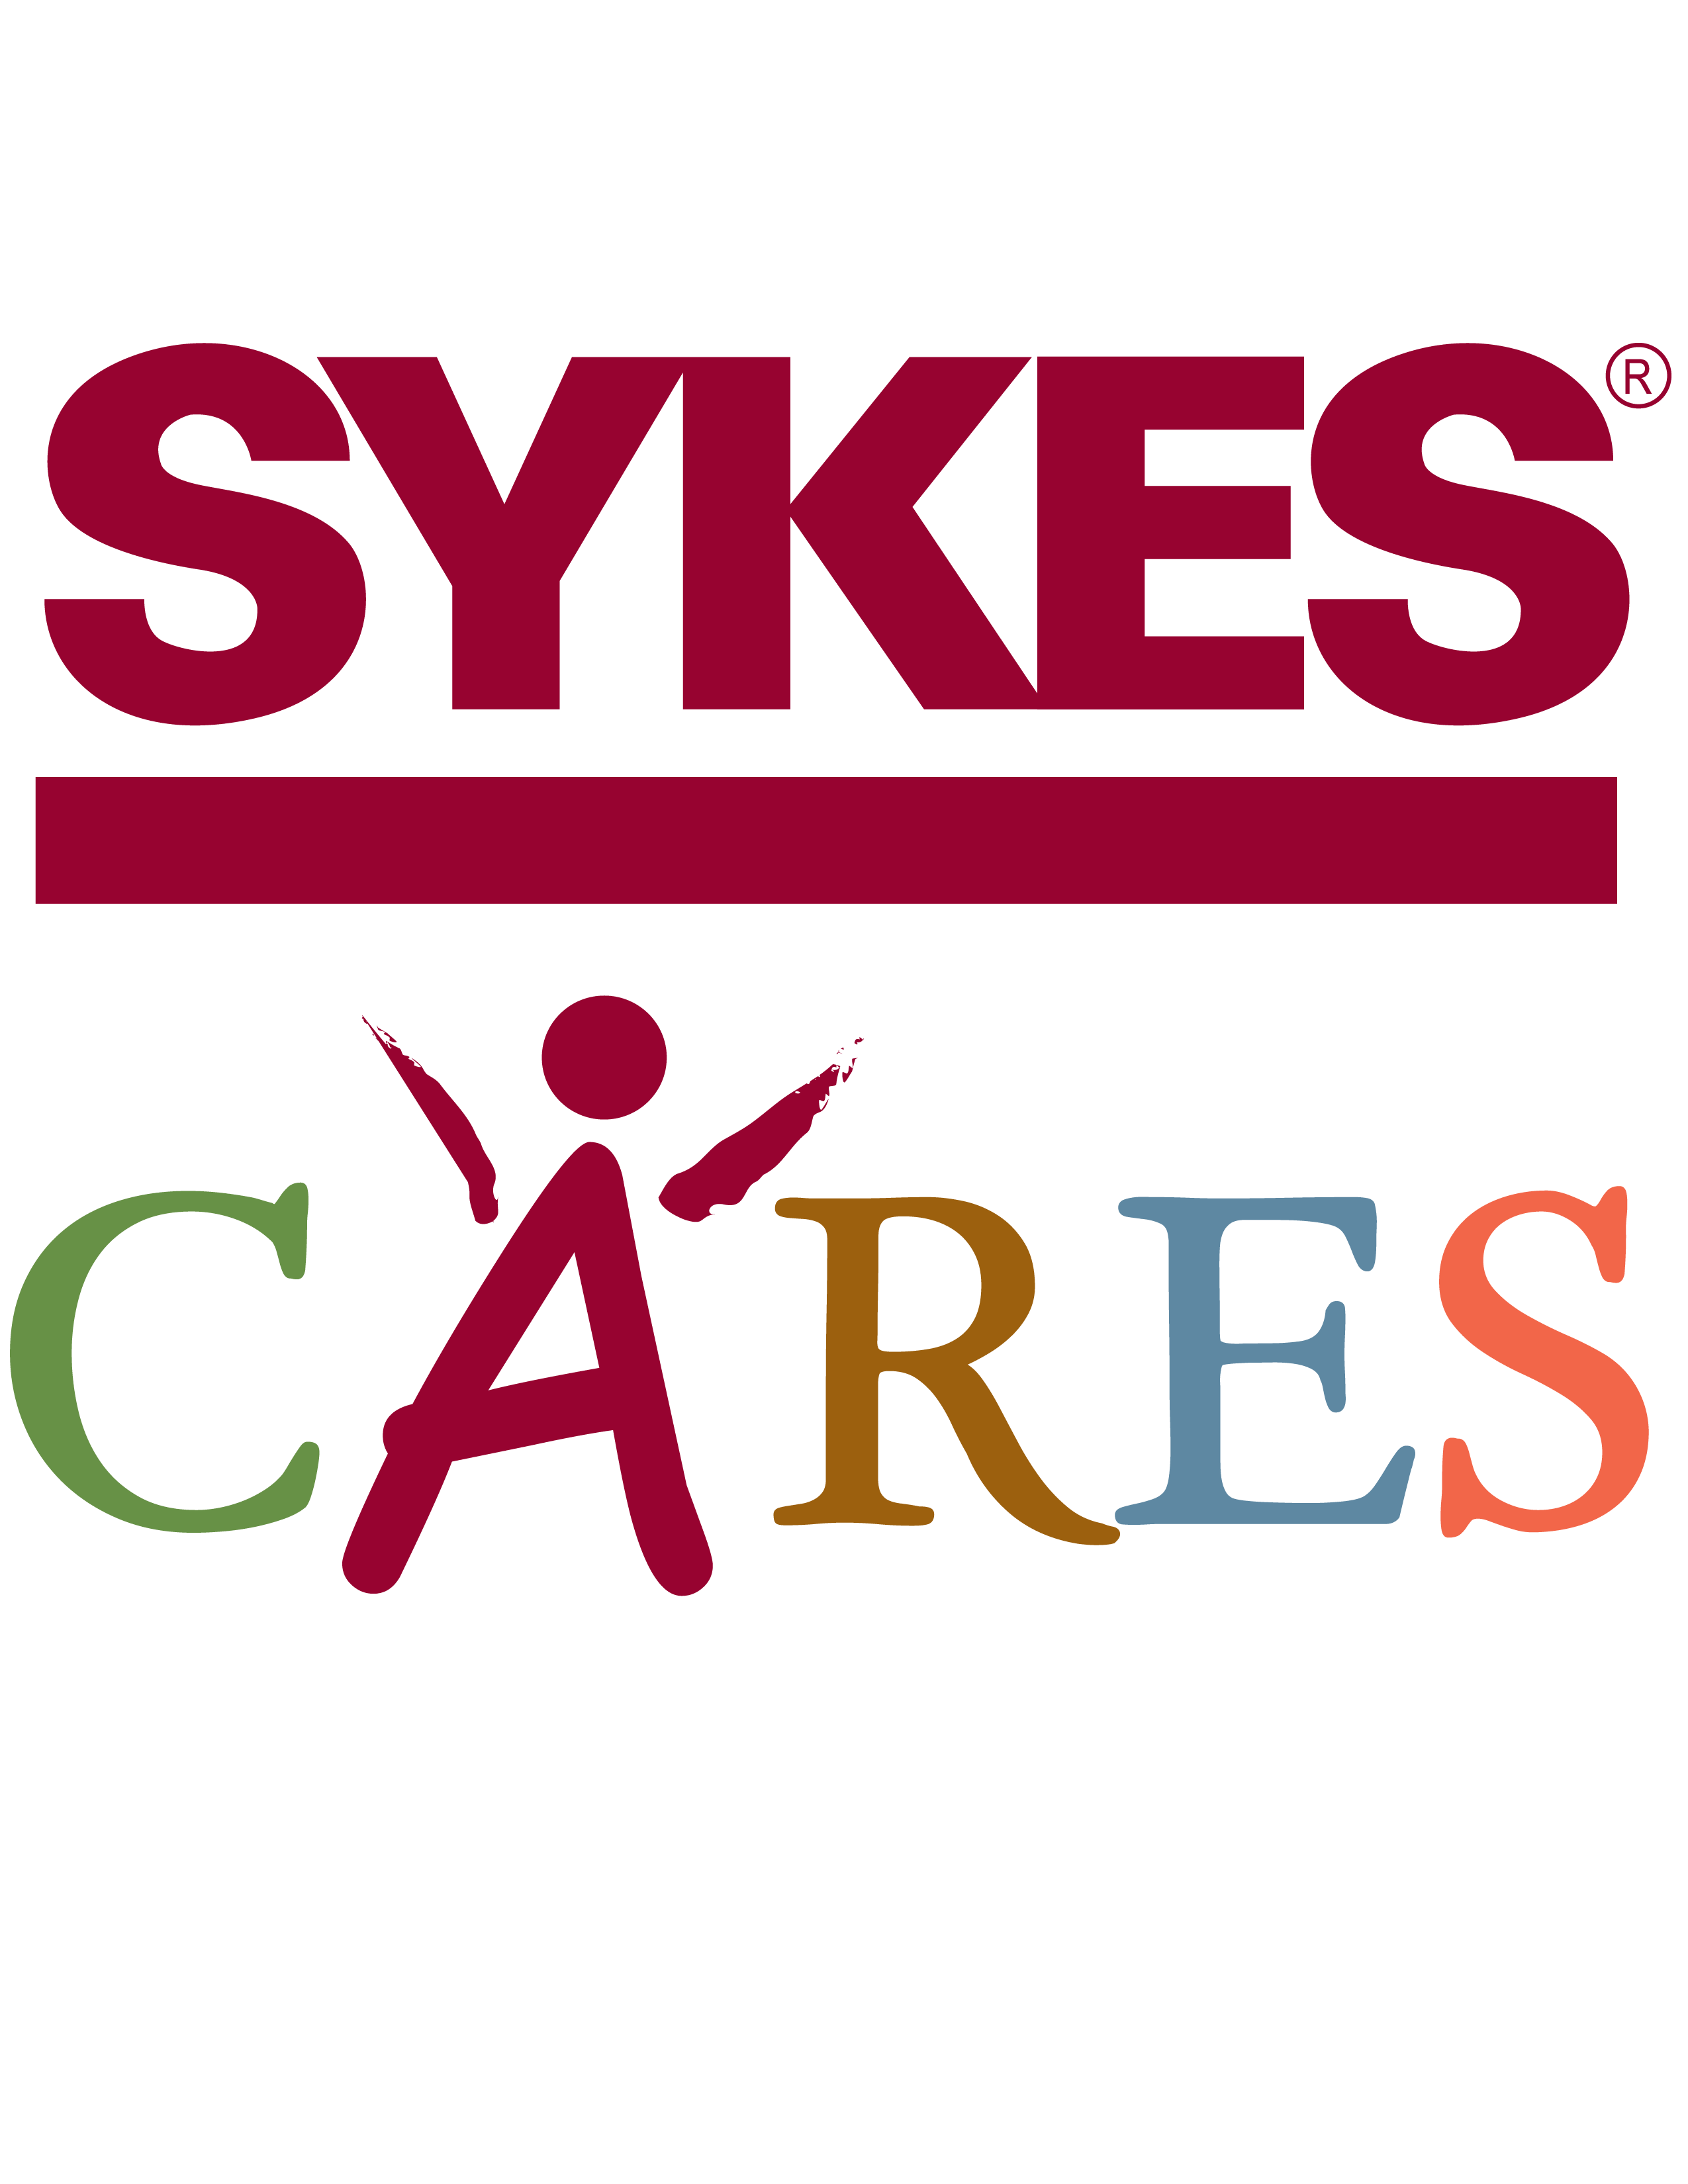 Sykes Logo - SYKES CARES LOGO 01 (2)